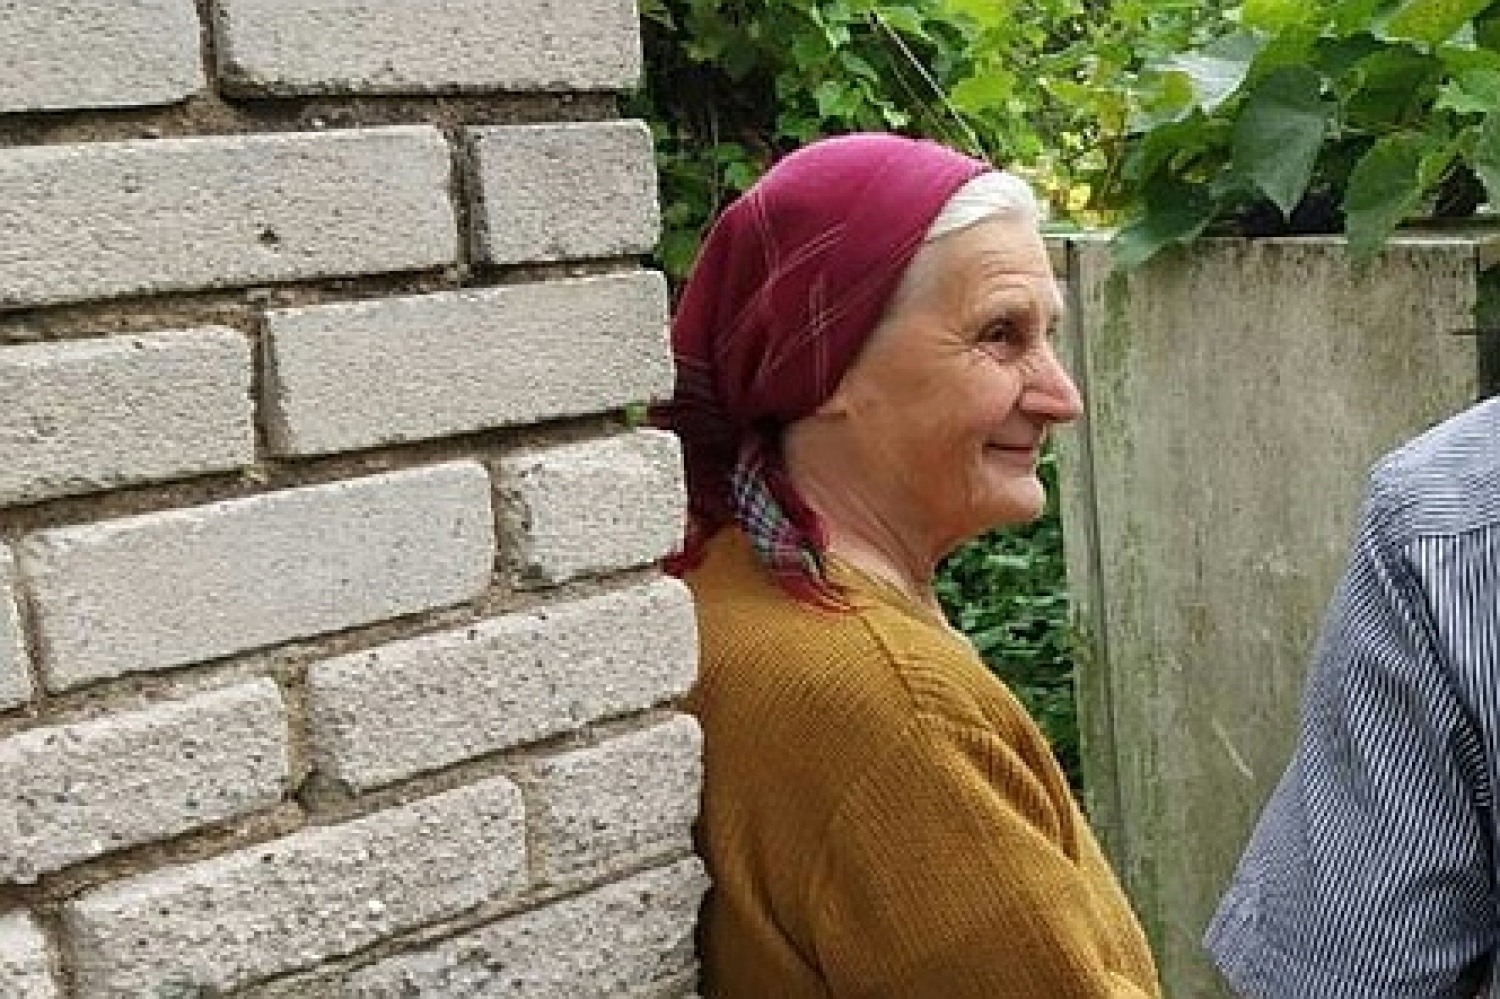 Каждый день автостопом до храма. Как 72-летняя пани Марыся делится хлебом